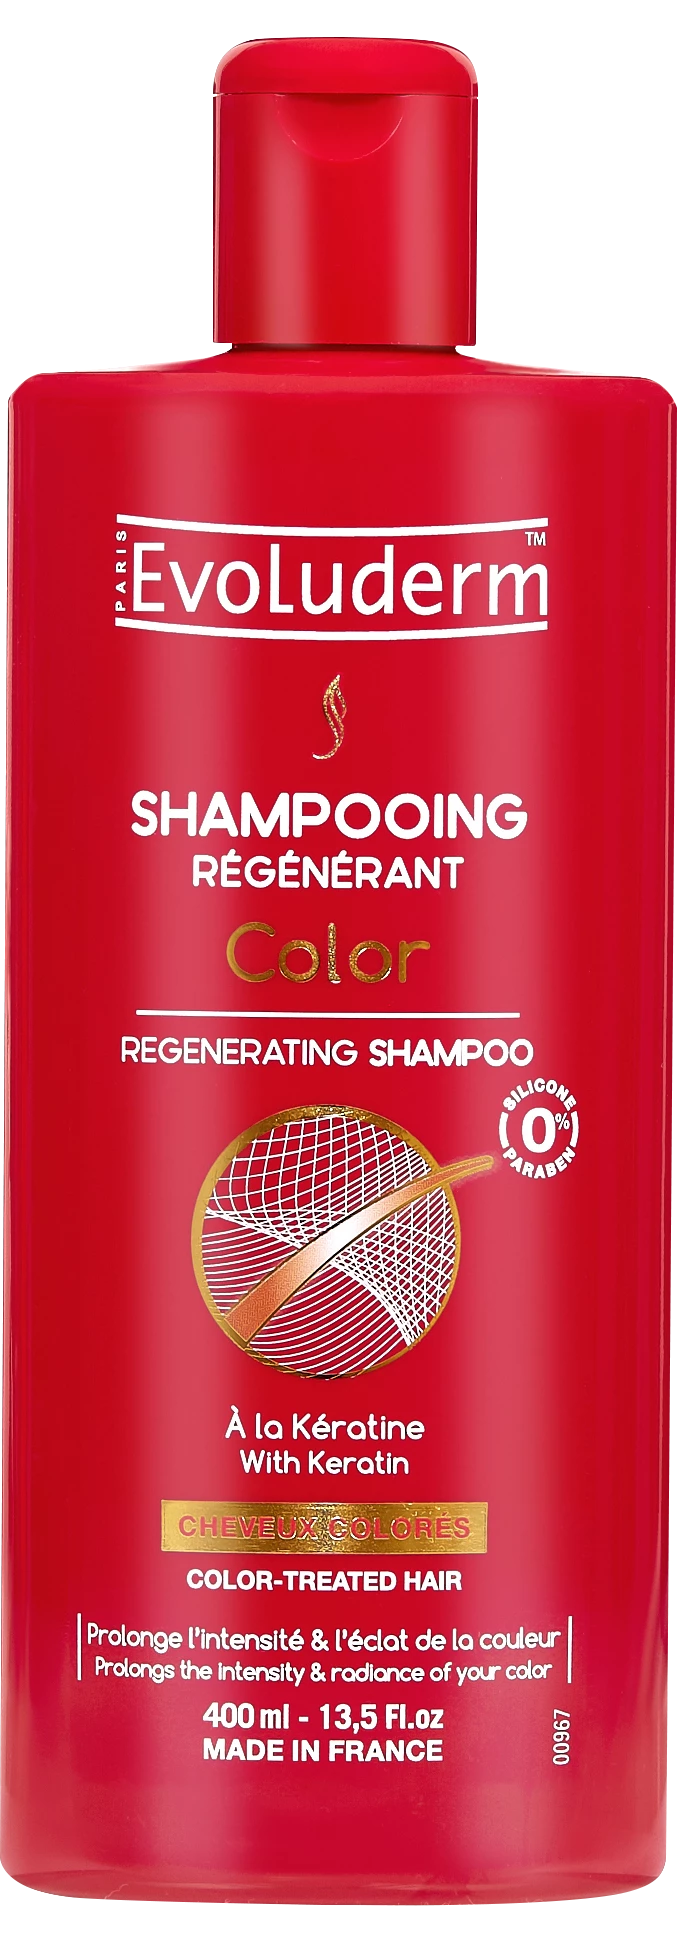 Shampooing Régénérant Color, 400ml - EVOLUDERM